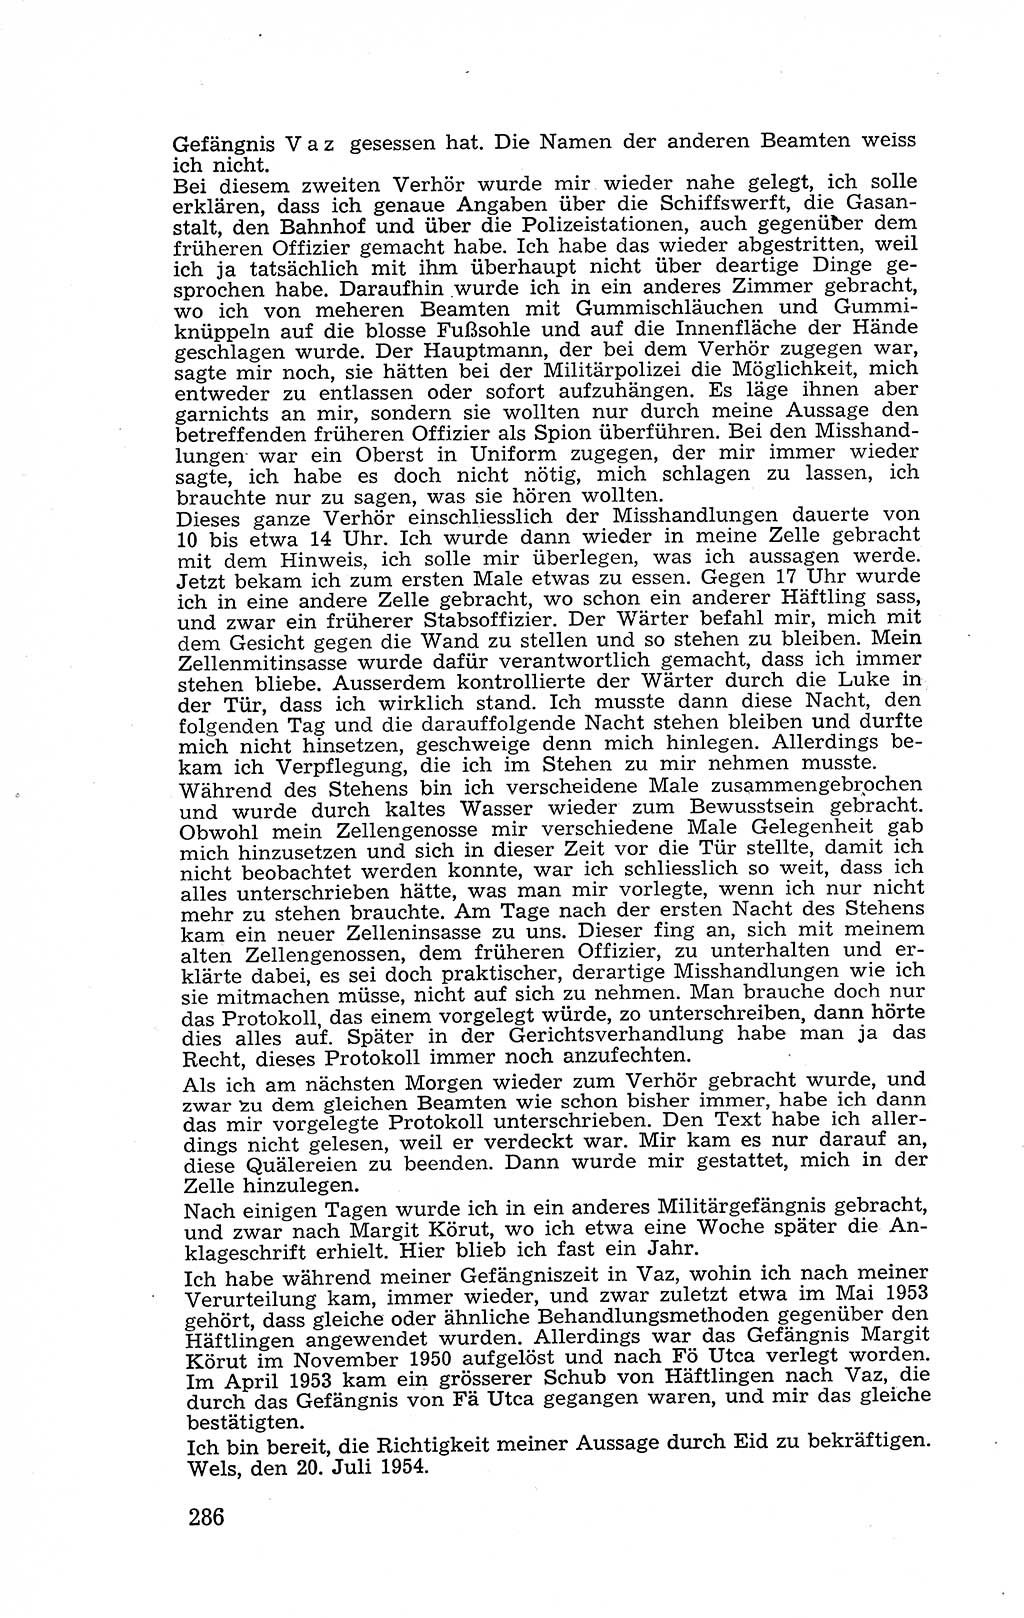 Recht in Fesseln, Dokumente, Internationale Juristen-Kommission [Bundesrepublik Deutschland (BRD)] 1955, Seite 286 (R. Dok. IJK BRD 1955, S. 286)